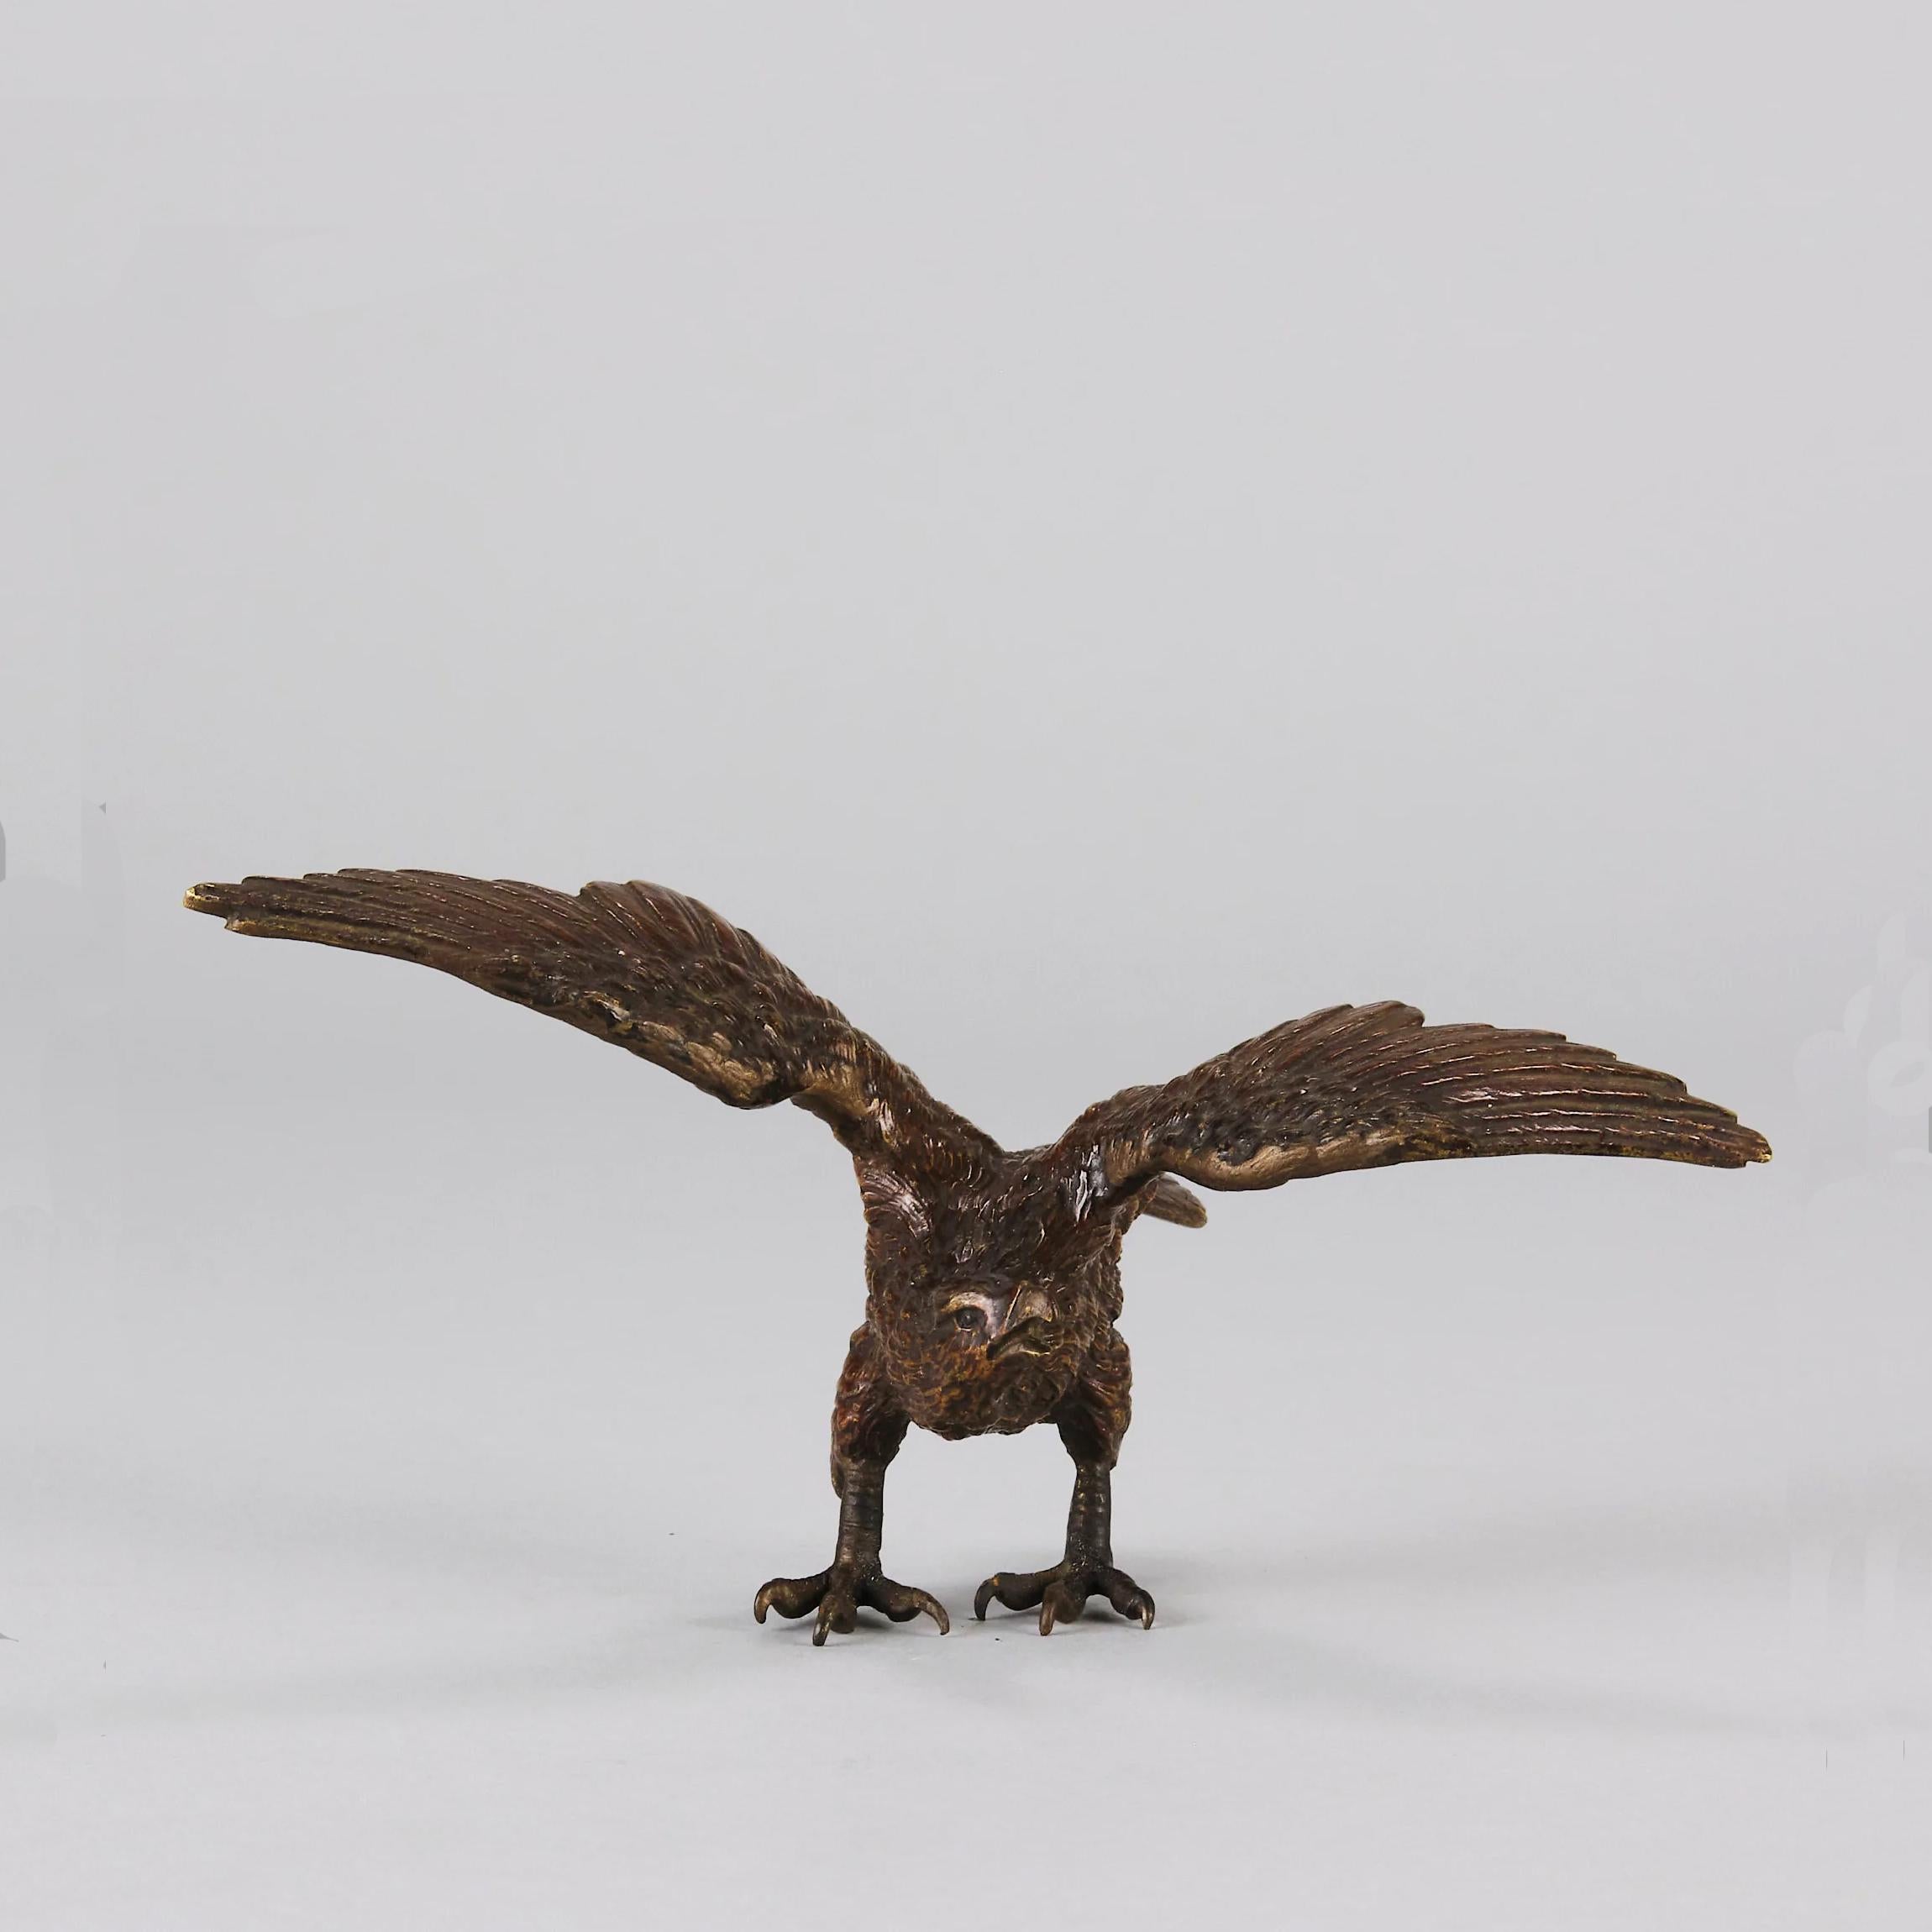 Eine sehr schöne österreichische Bronzestudie eines Adlers, der seine Flügel ausbreitet, aus dem frühen 20. Die Skulptur balanciert natürlich auf den Krallen des Adlers, frei stehend eine wunderbare Darstellung dieser freien und edlen Geschöpfe. Die